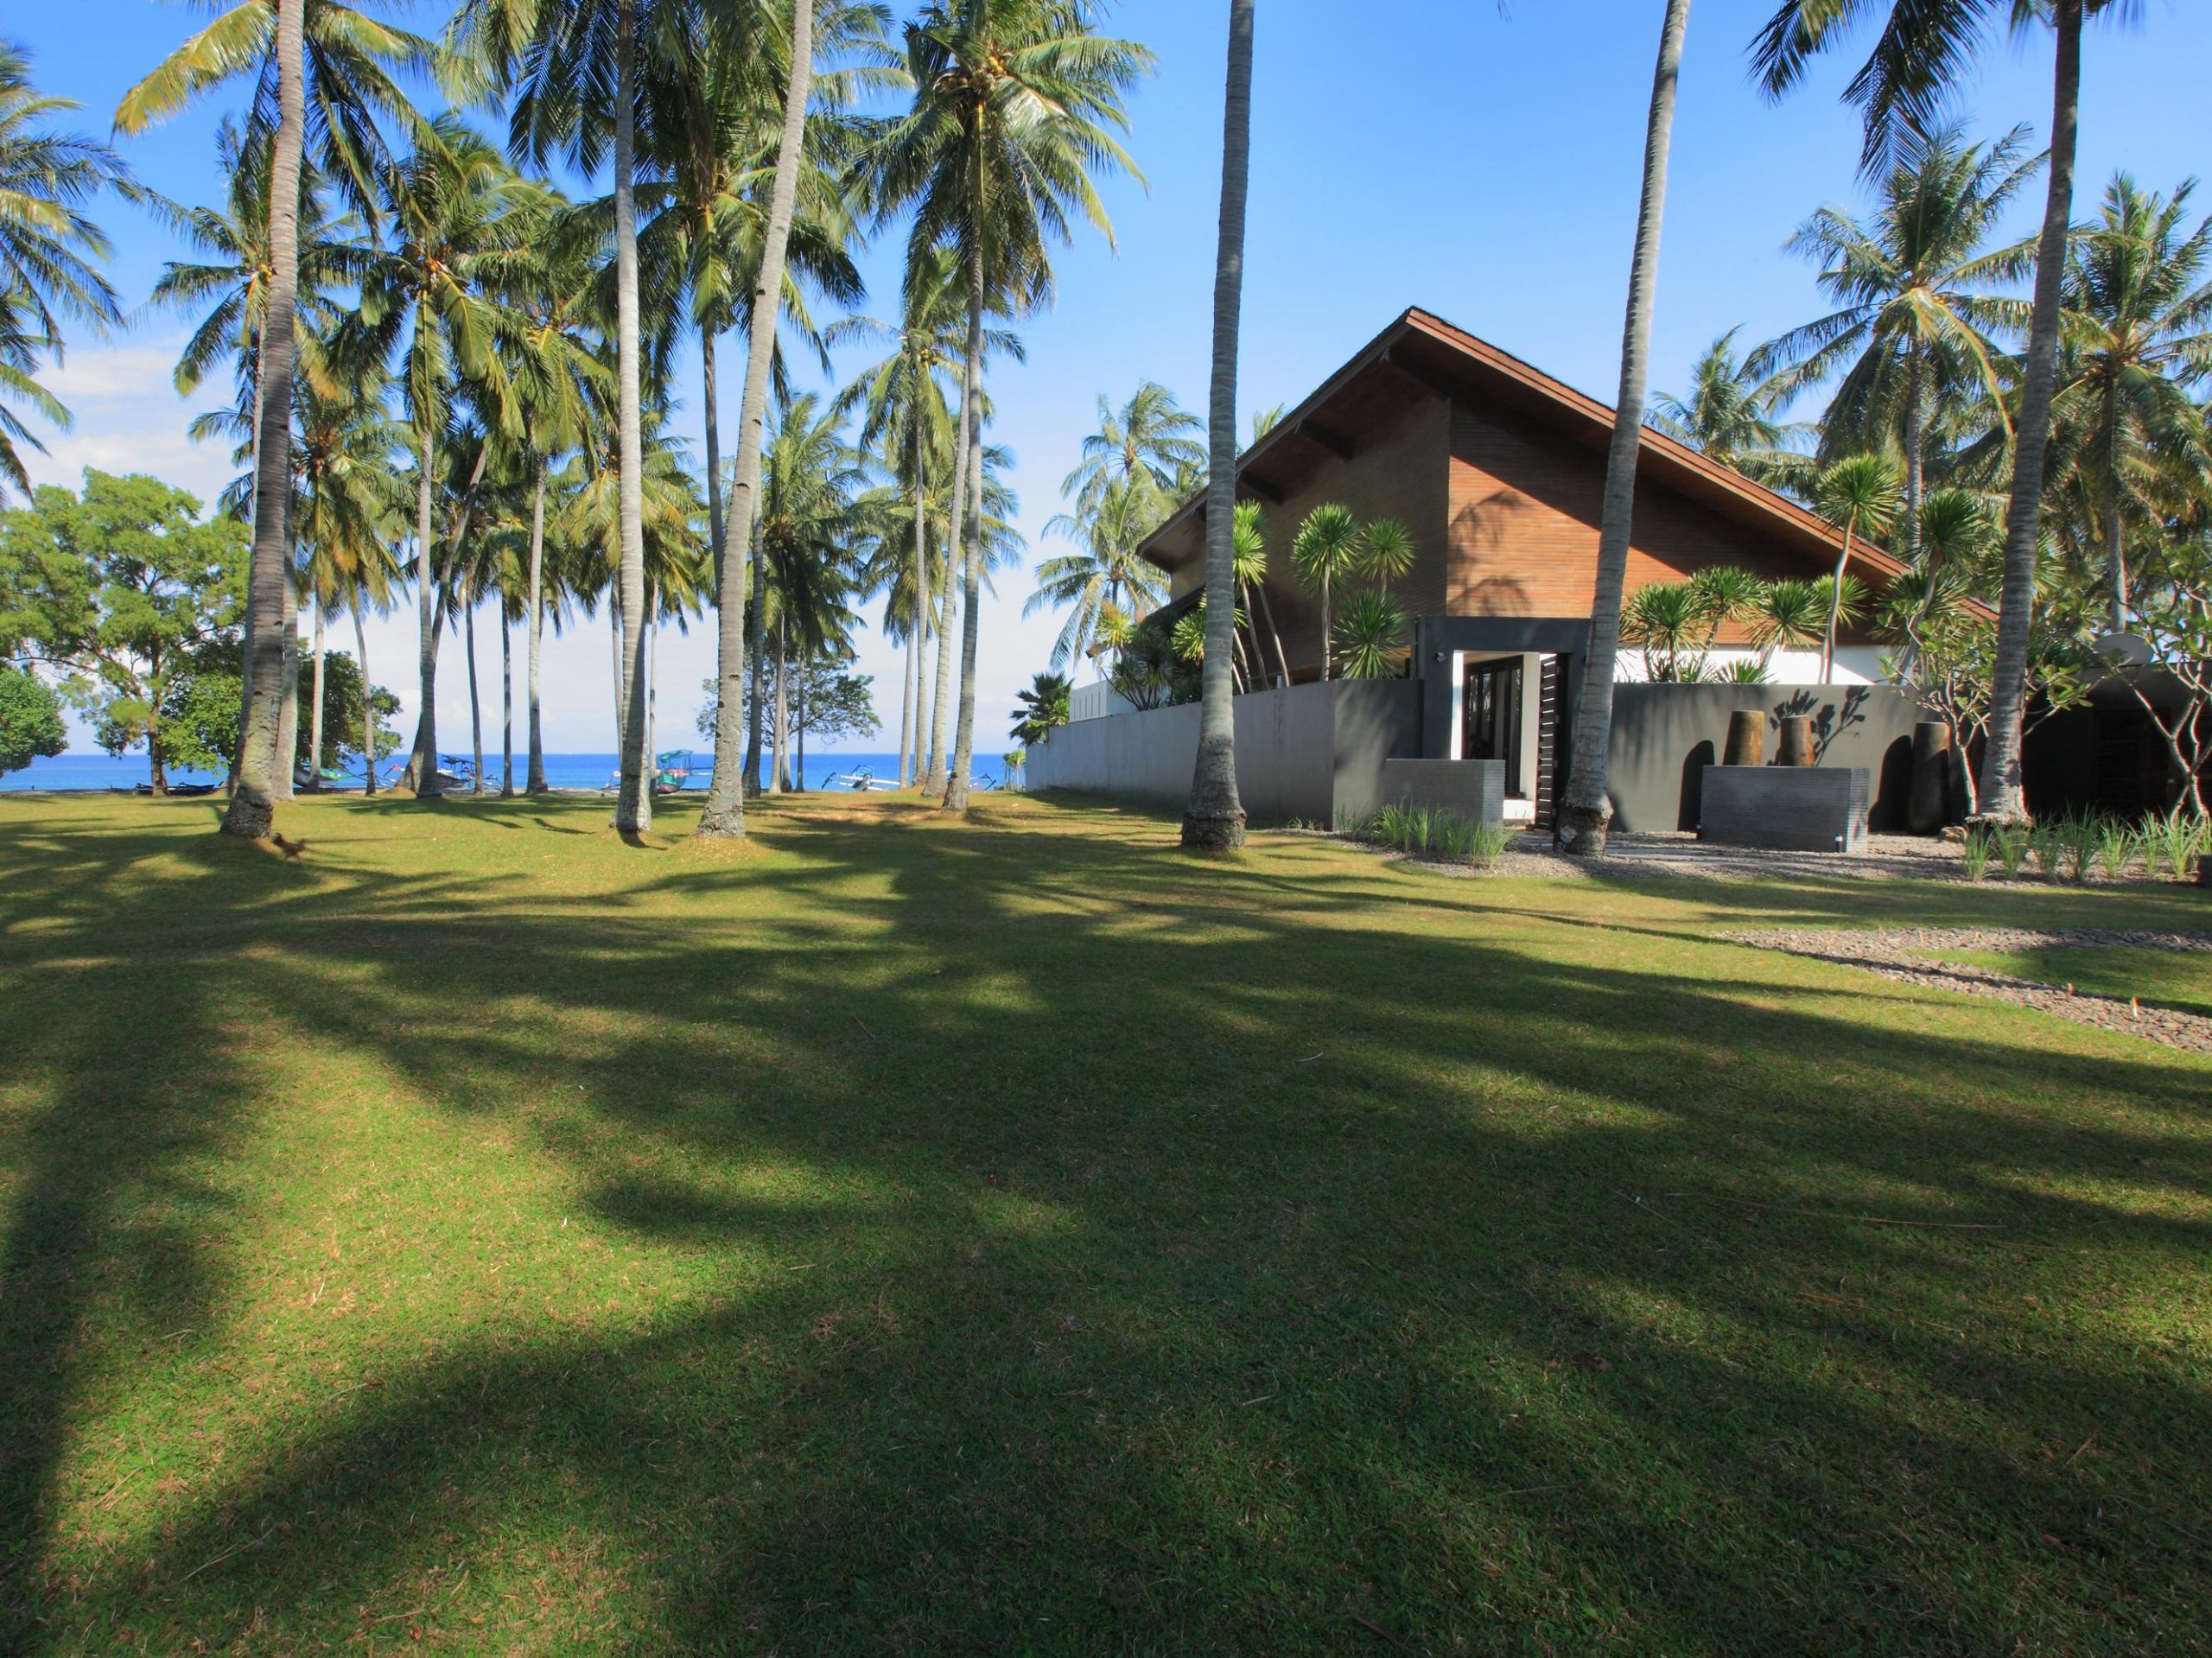 Verve Villas Lombok